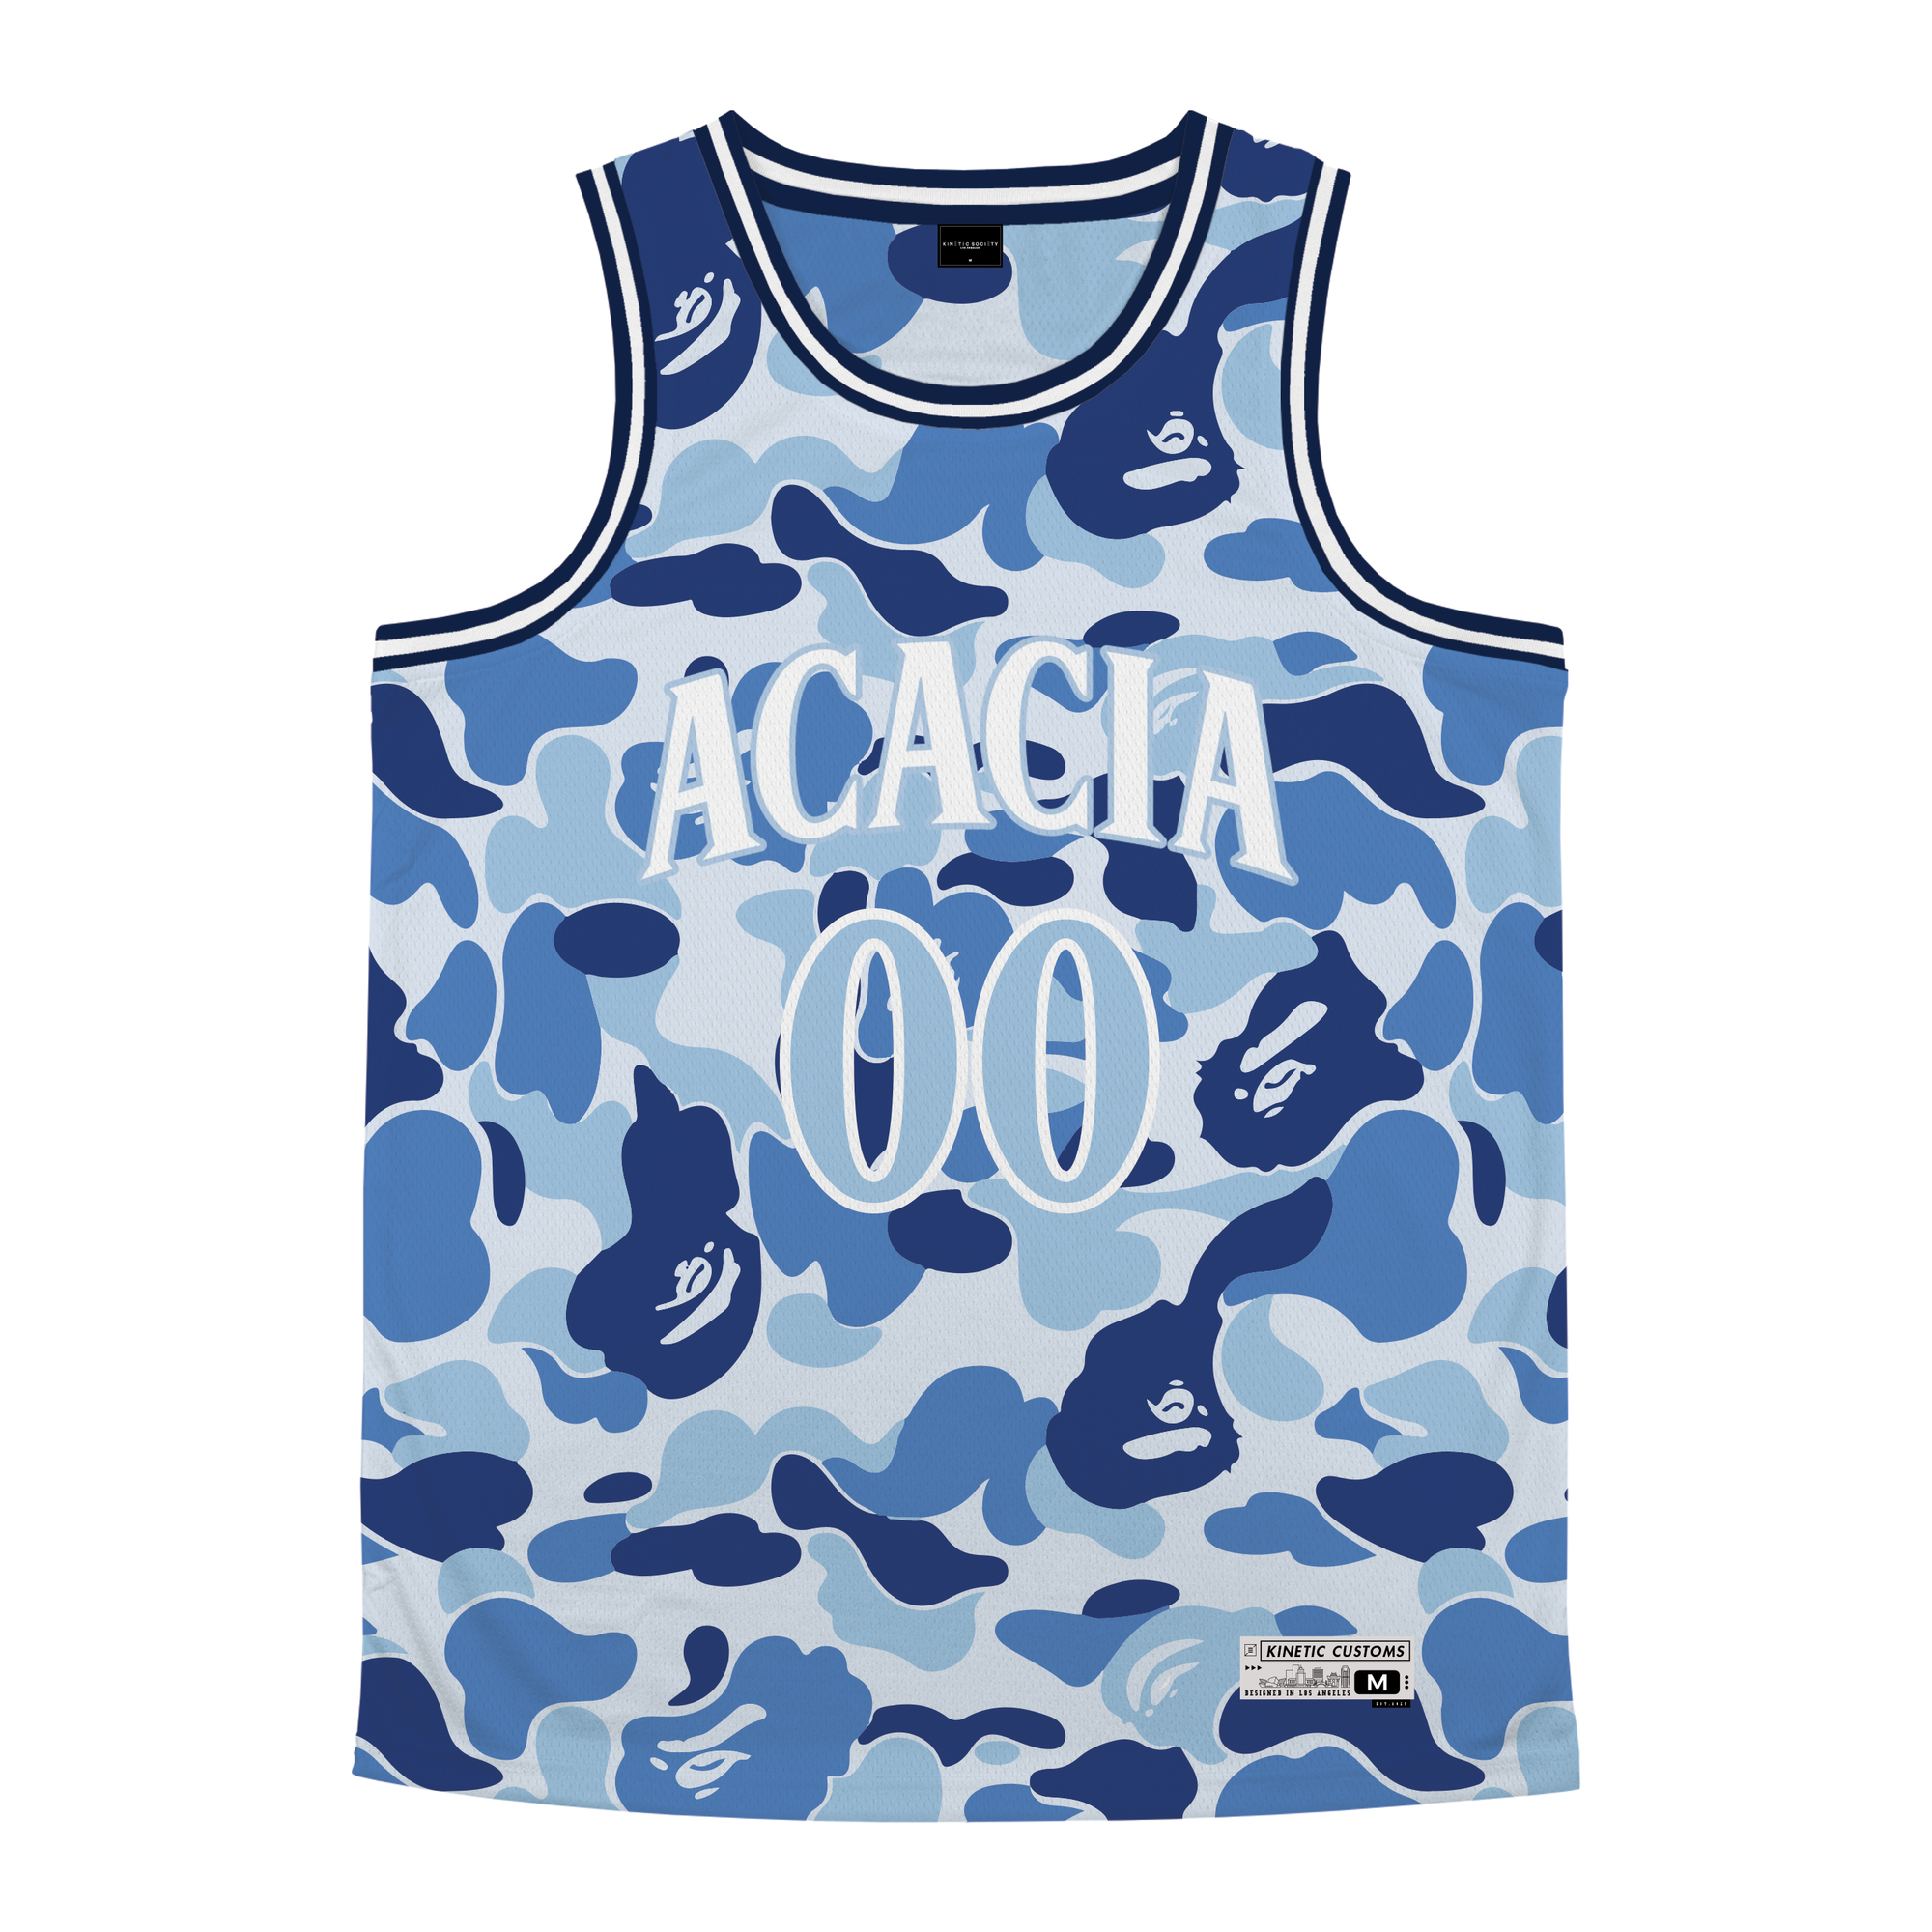 Acacia - Blue Camo Basketball Jersey